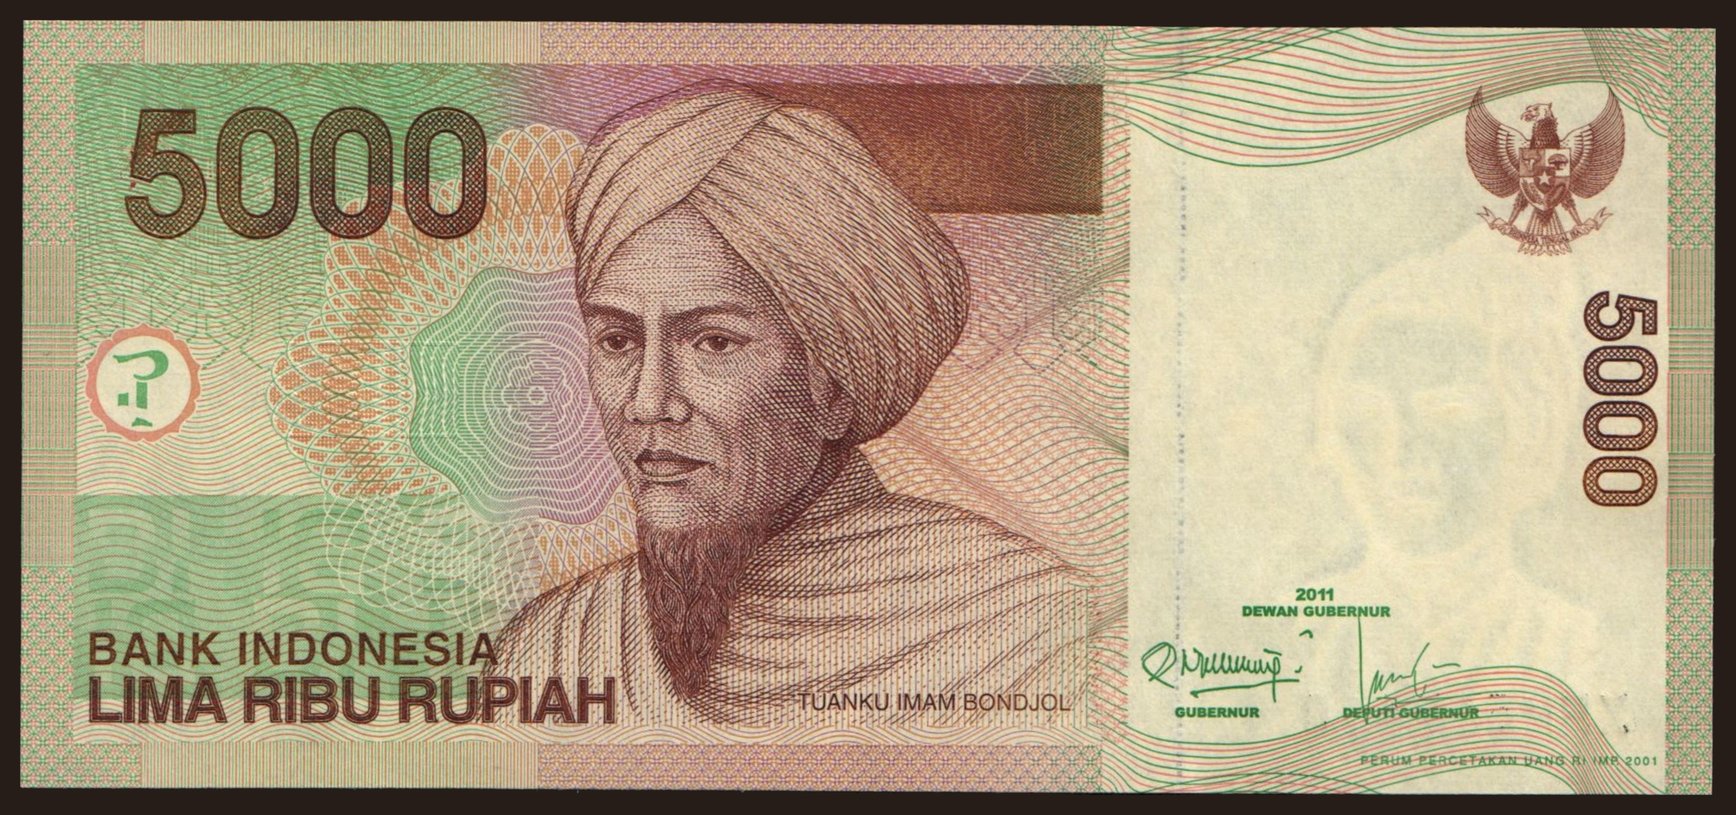 5000 rupiah, 2011